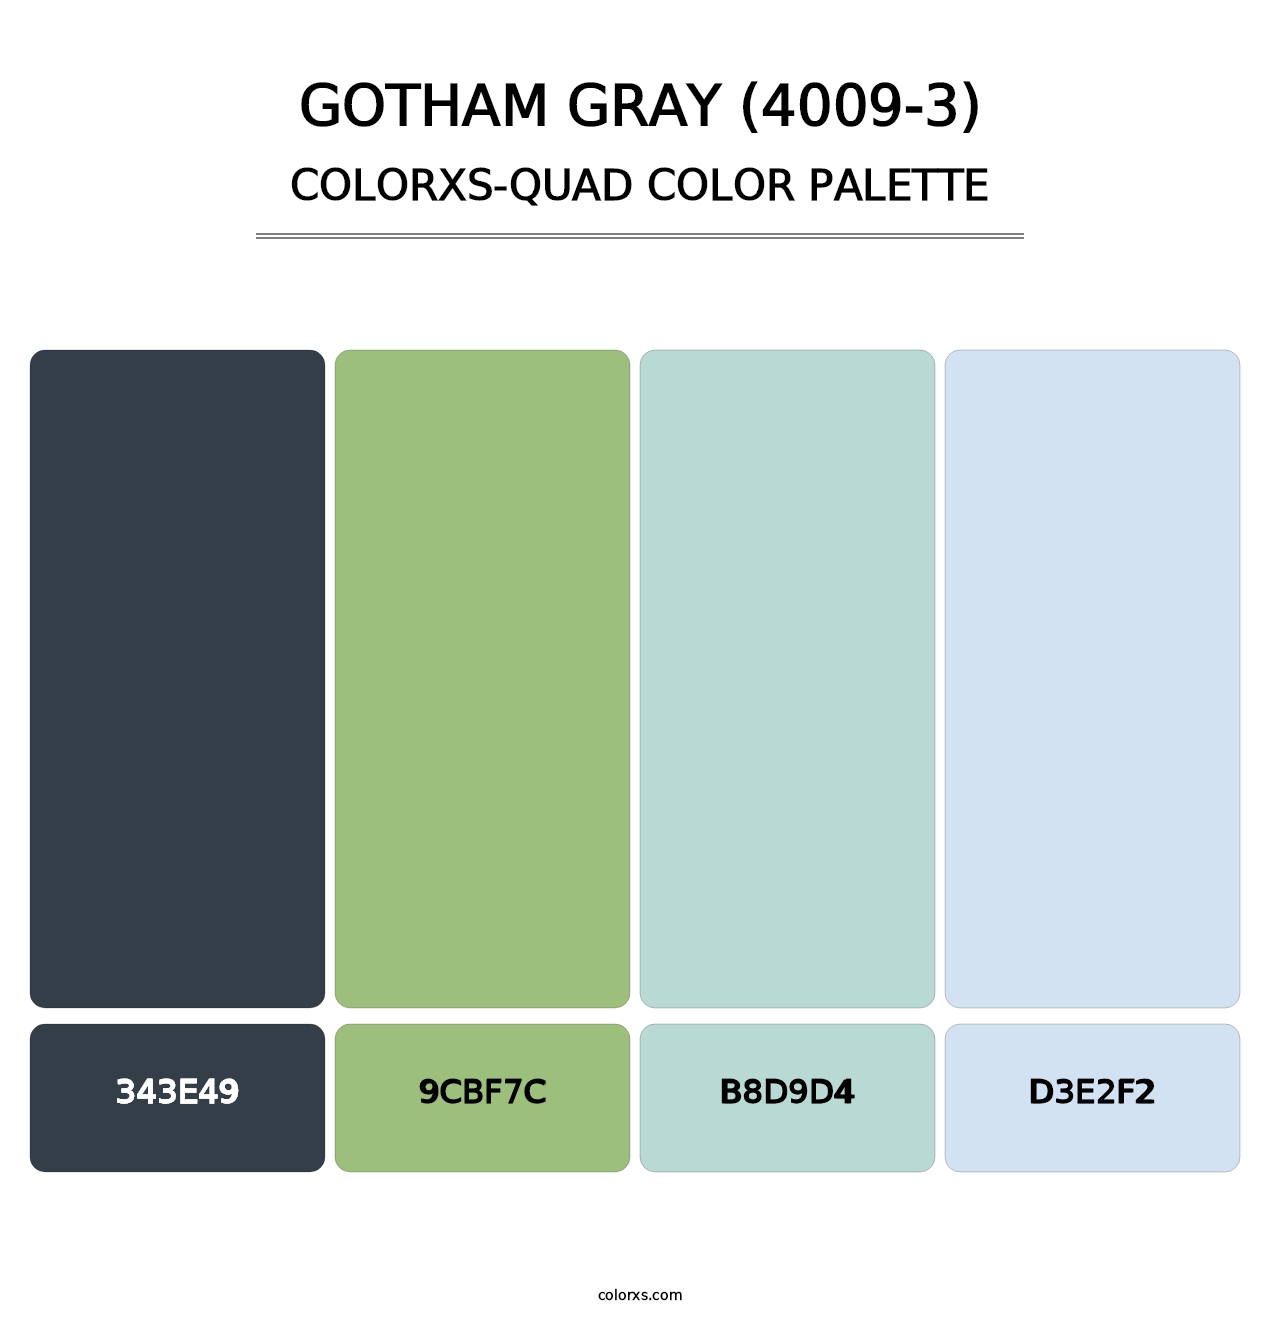 Gotham Gray (4009-3) - Colorxs Quad Palette